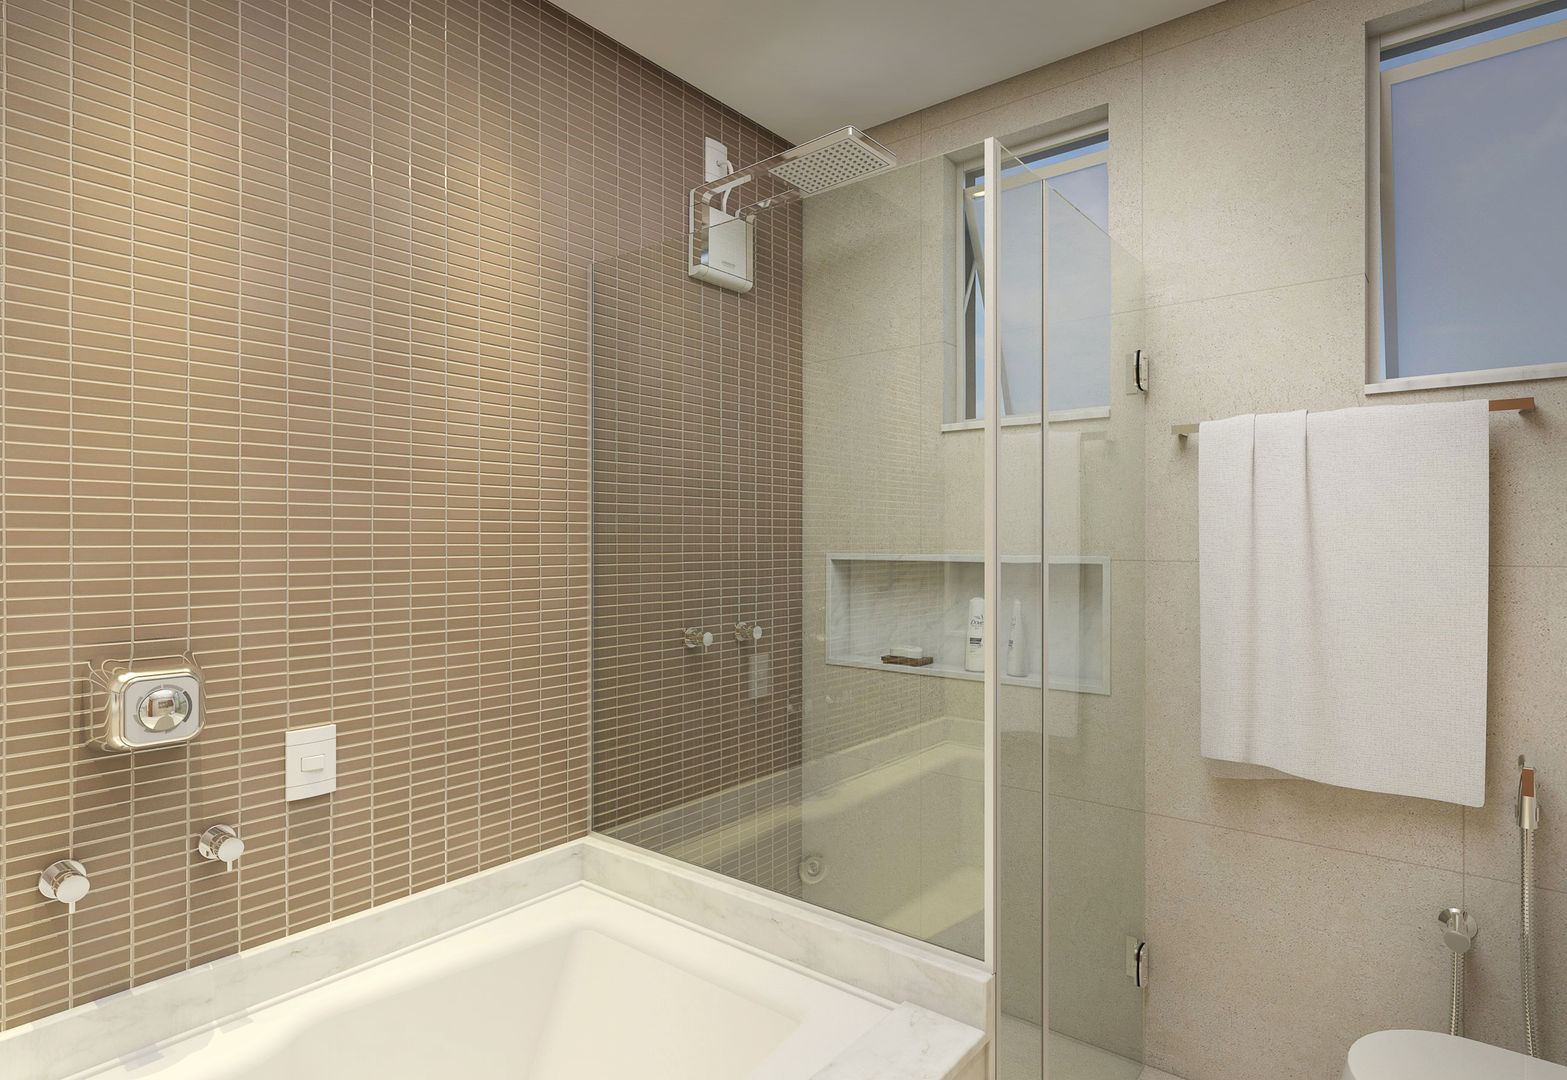 Banheiro Suíte Filipe Castro Arquitetura | Design Banheiros minimalistas Cerâmica